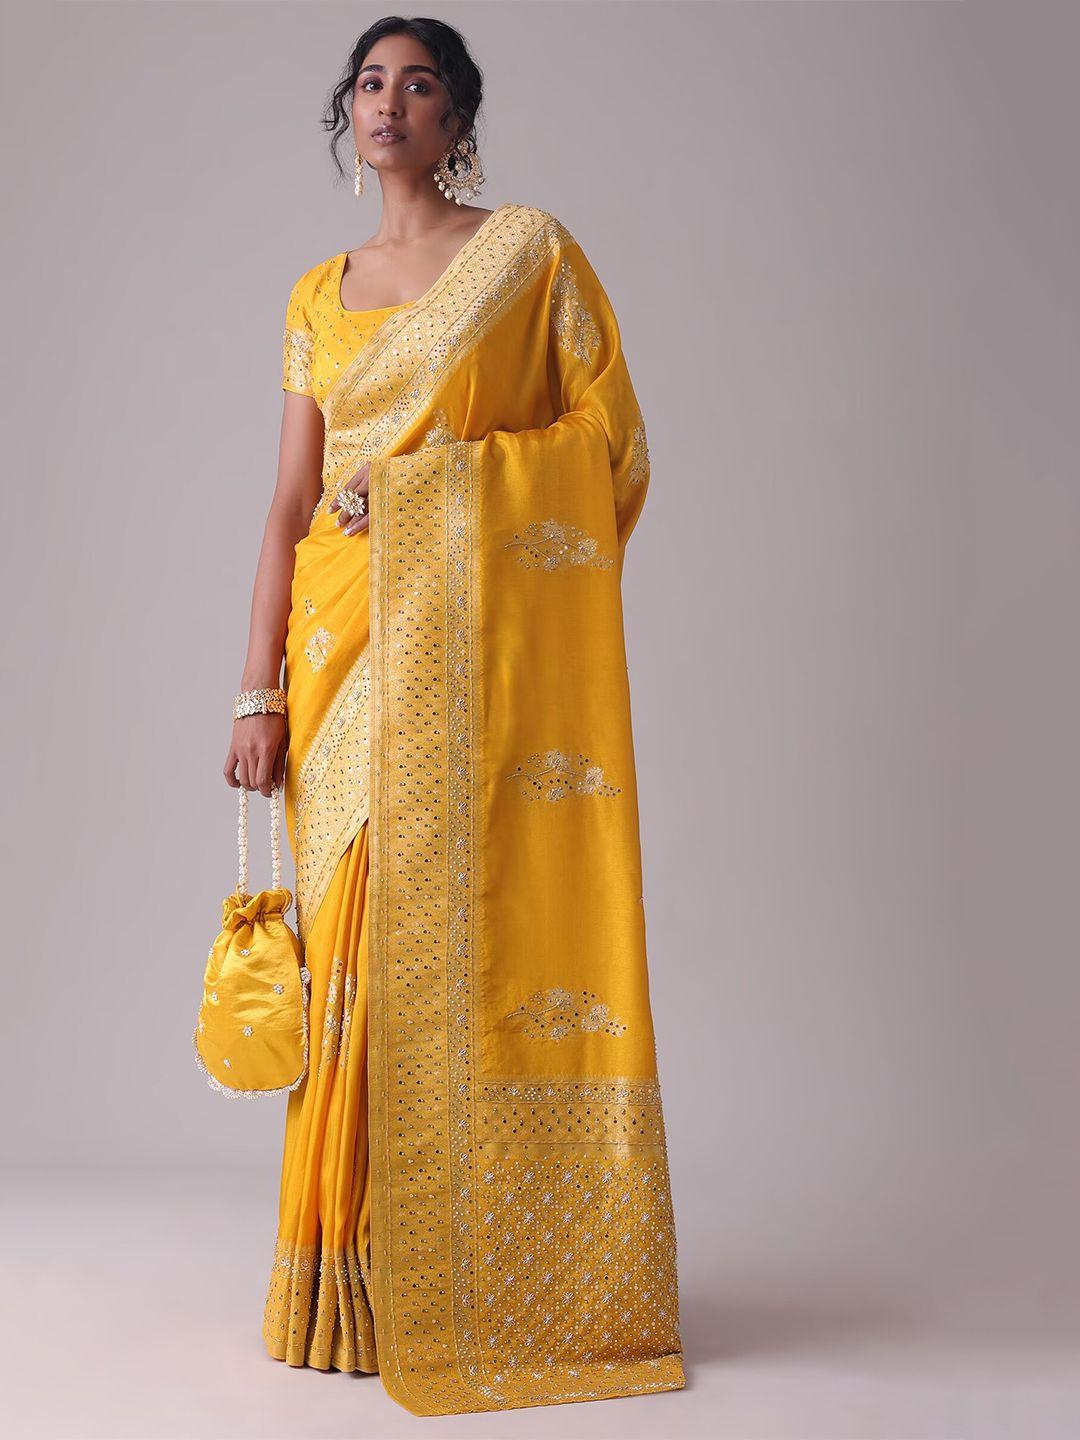 kalki fashion floral embroidered saree